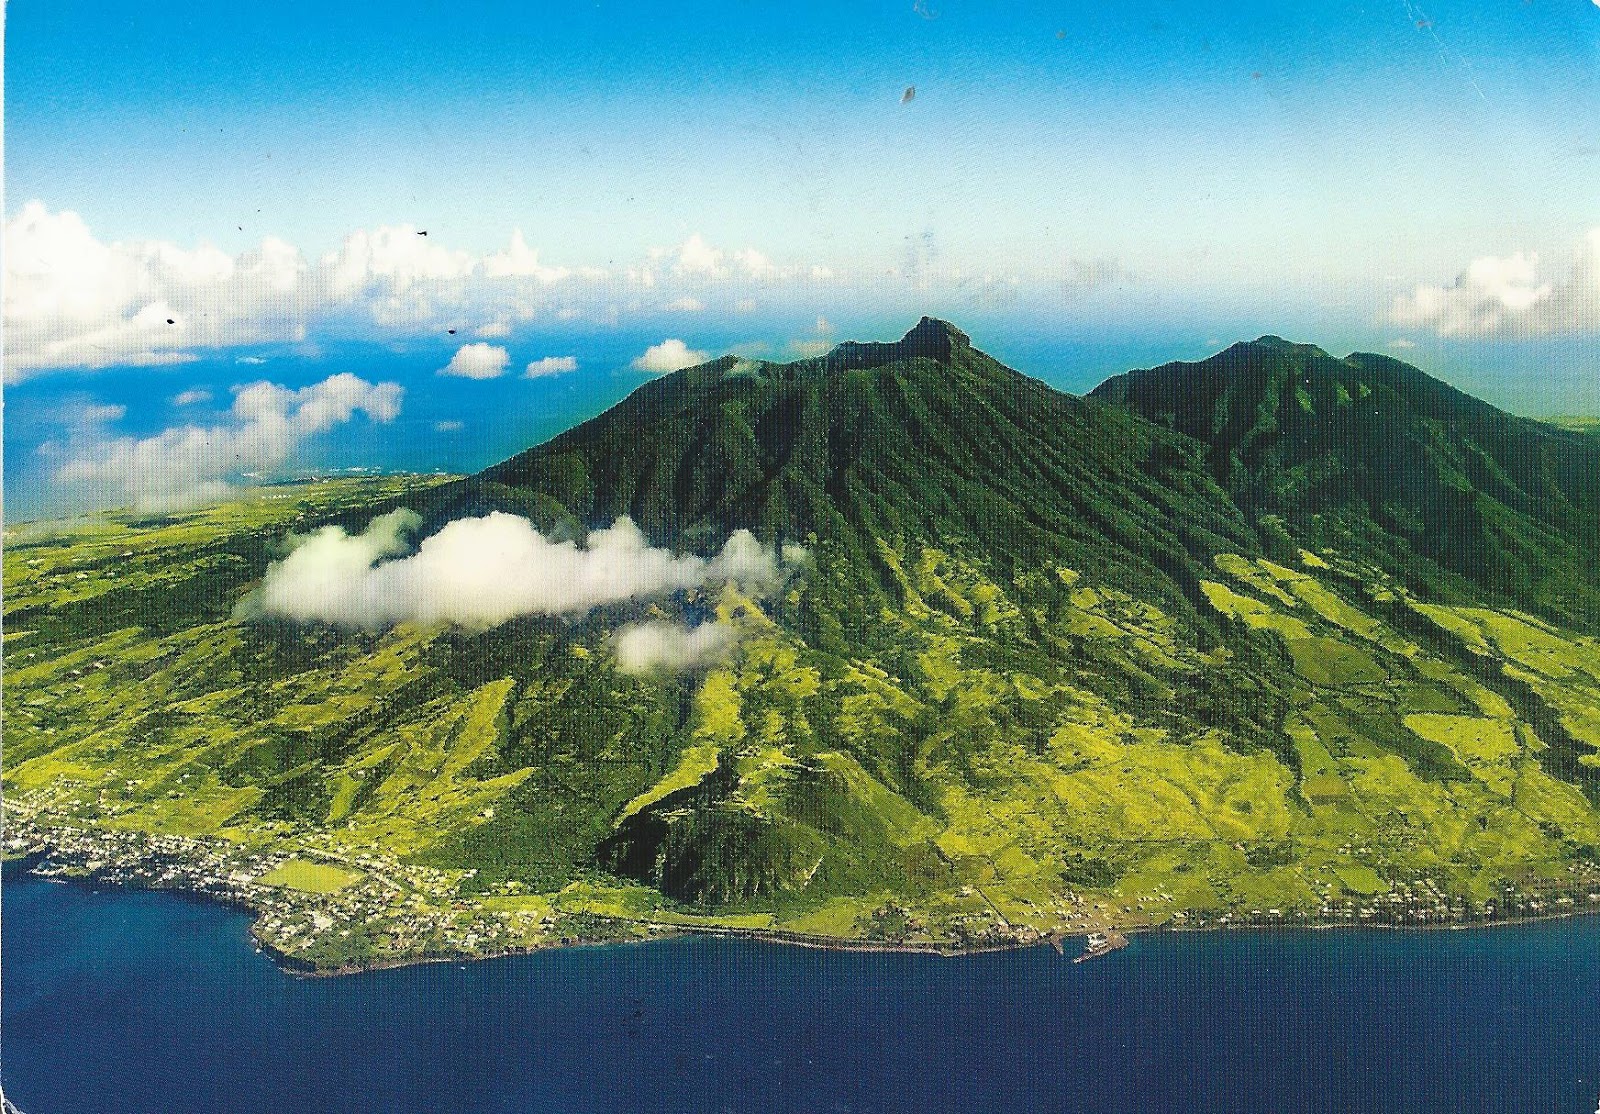 Mount Liamuiga Saint Kitts and Nevis.